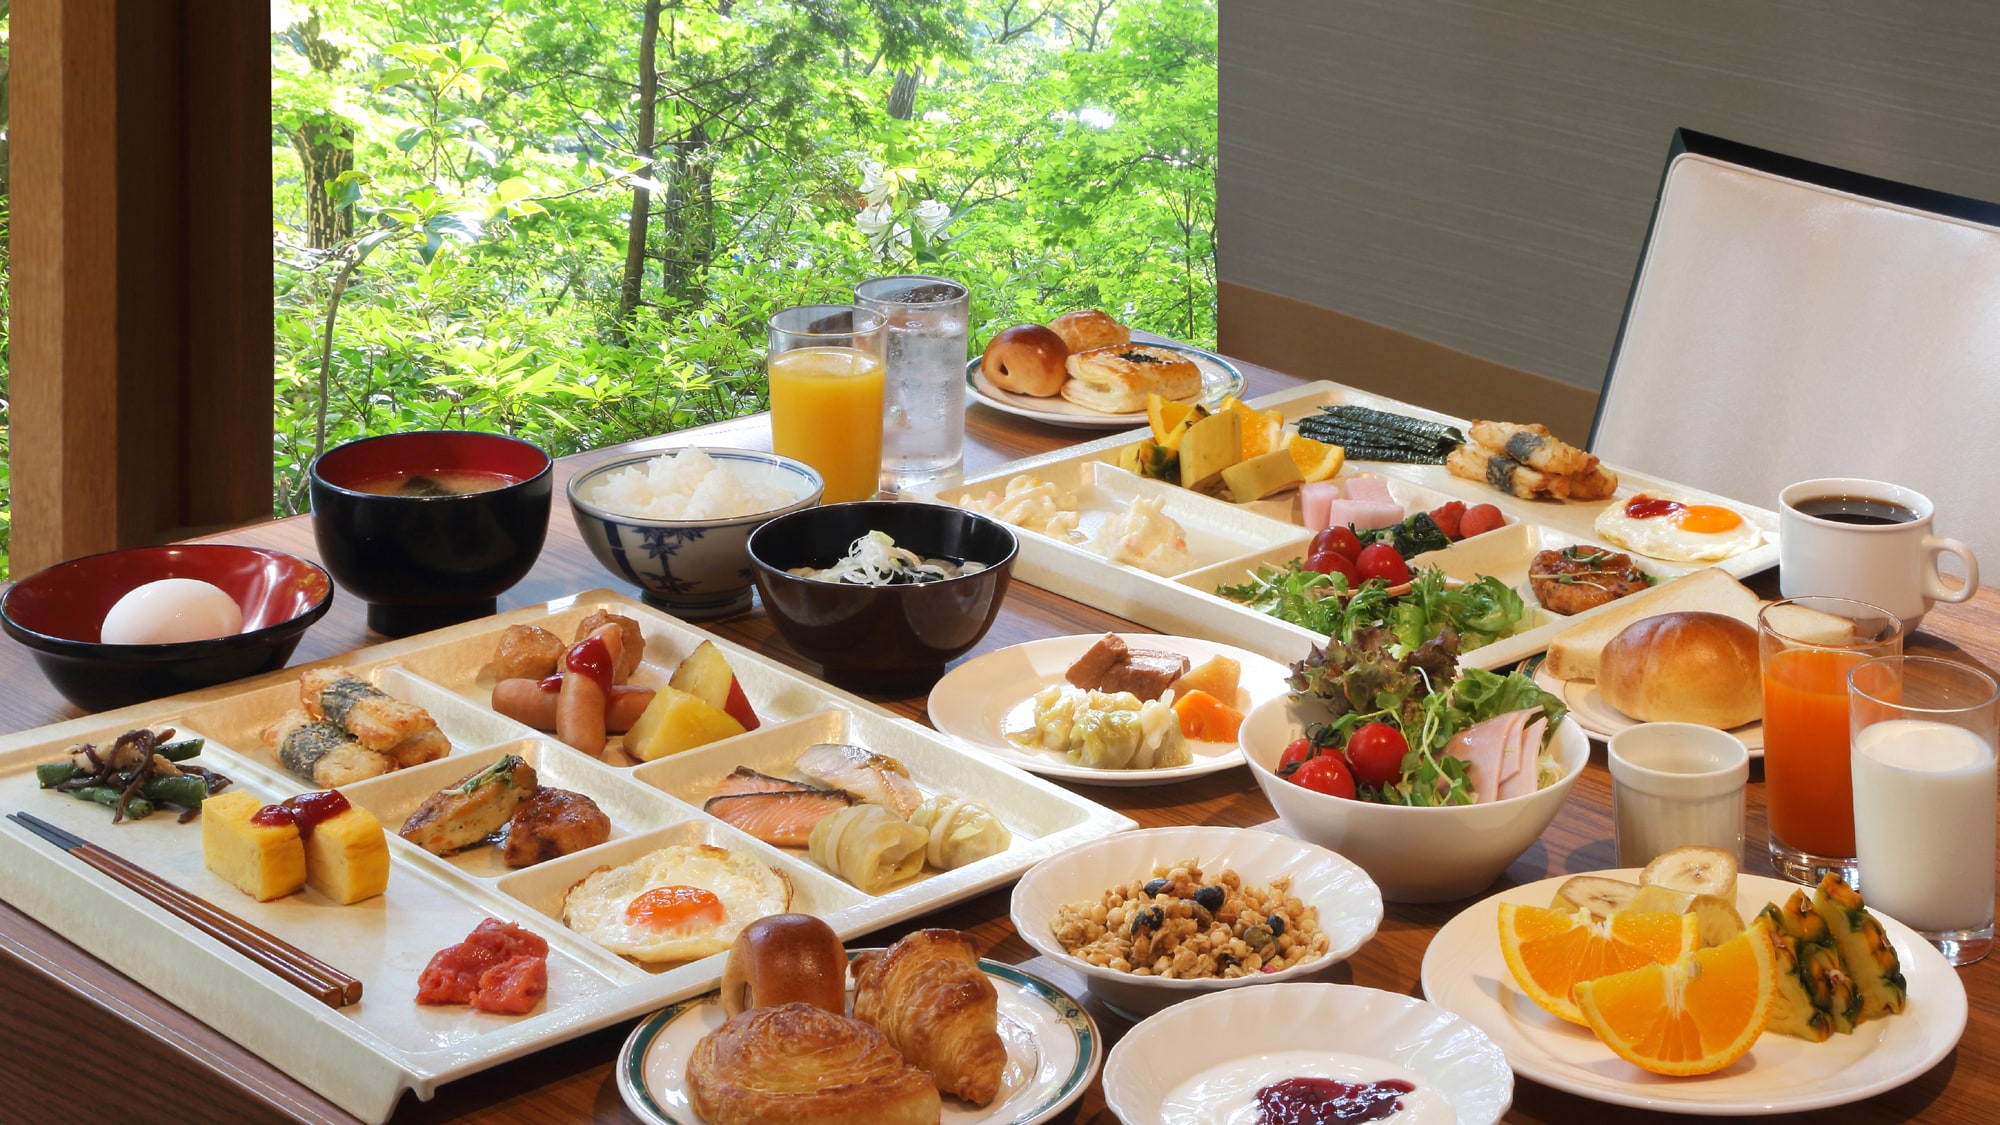 ◆ Breakfast buffet example